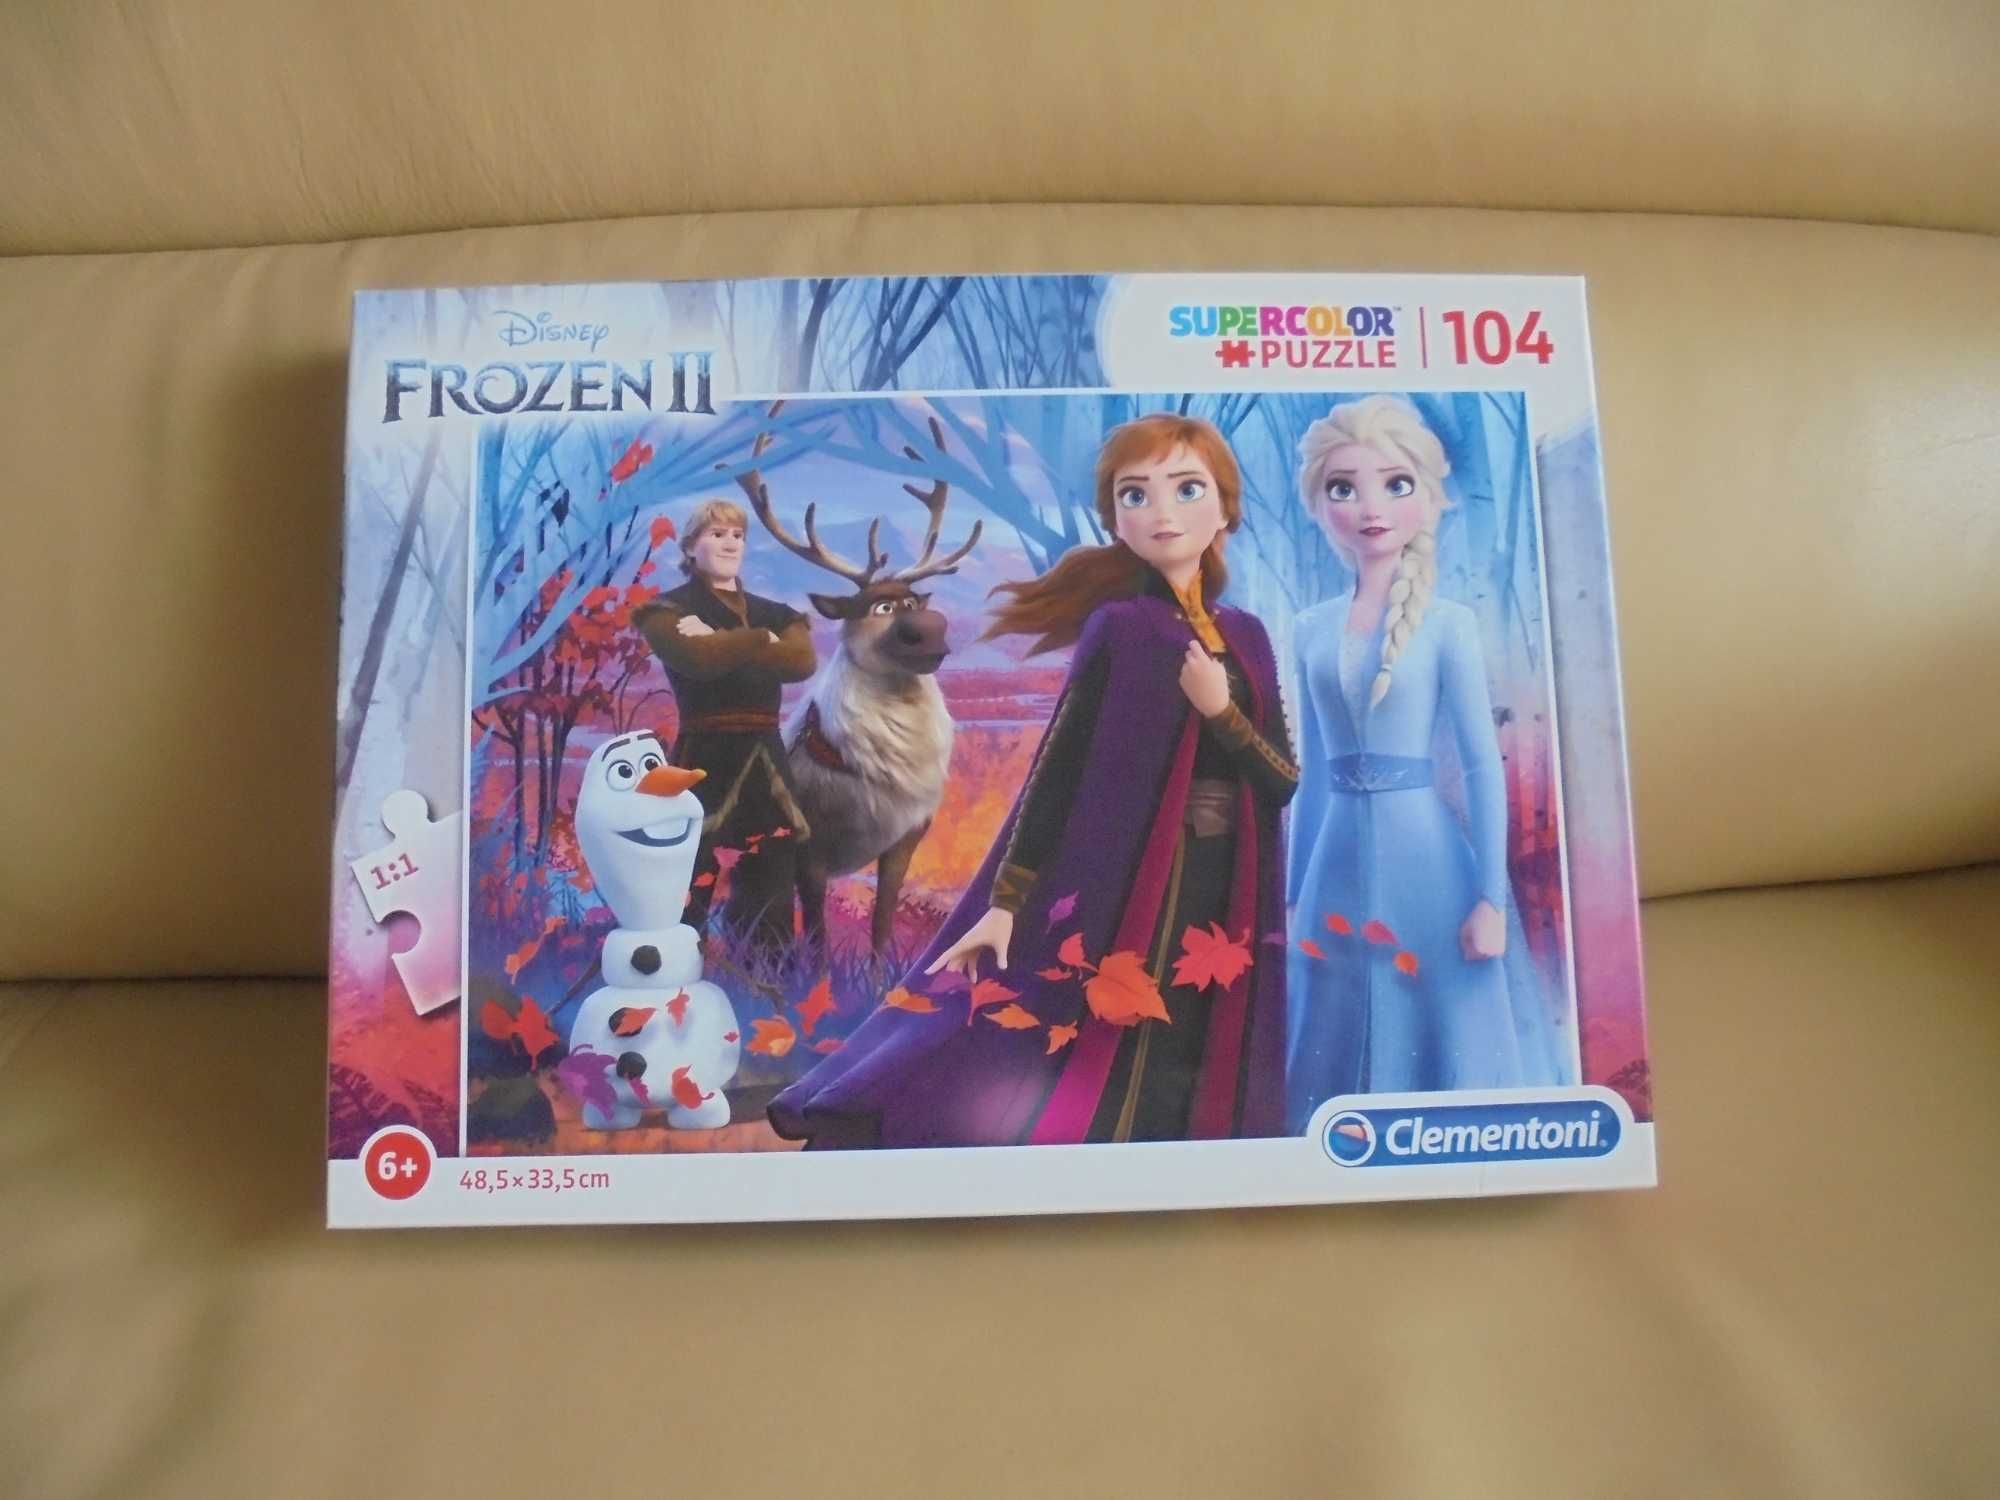 Jogos da Frozen no Meninas Jogos